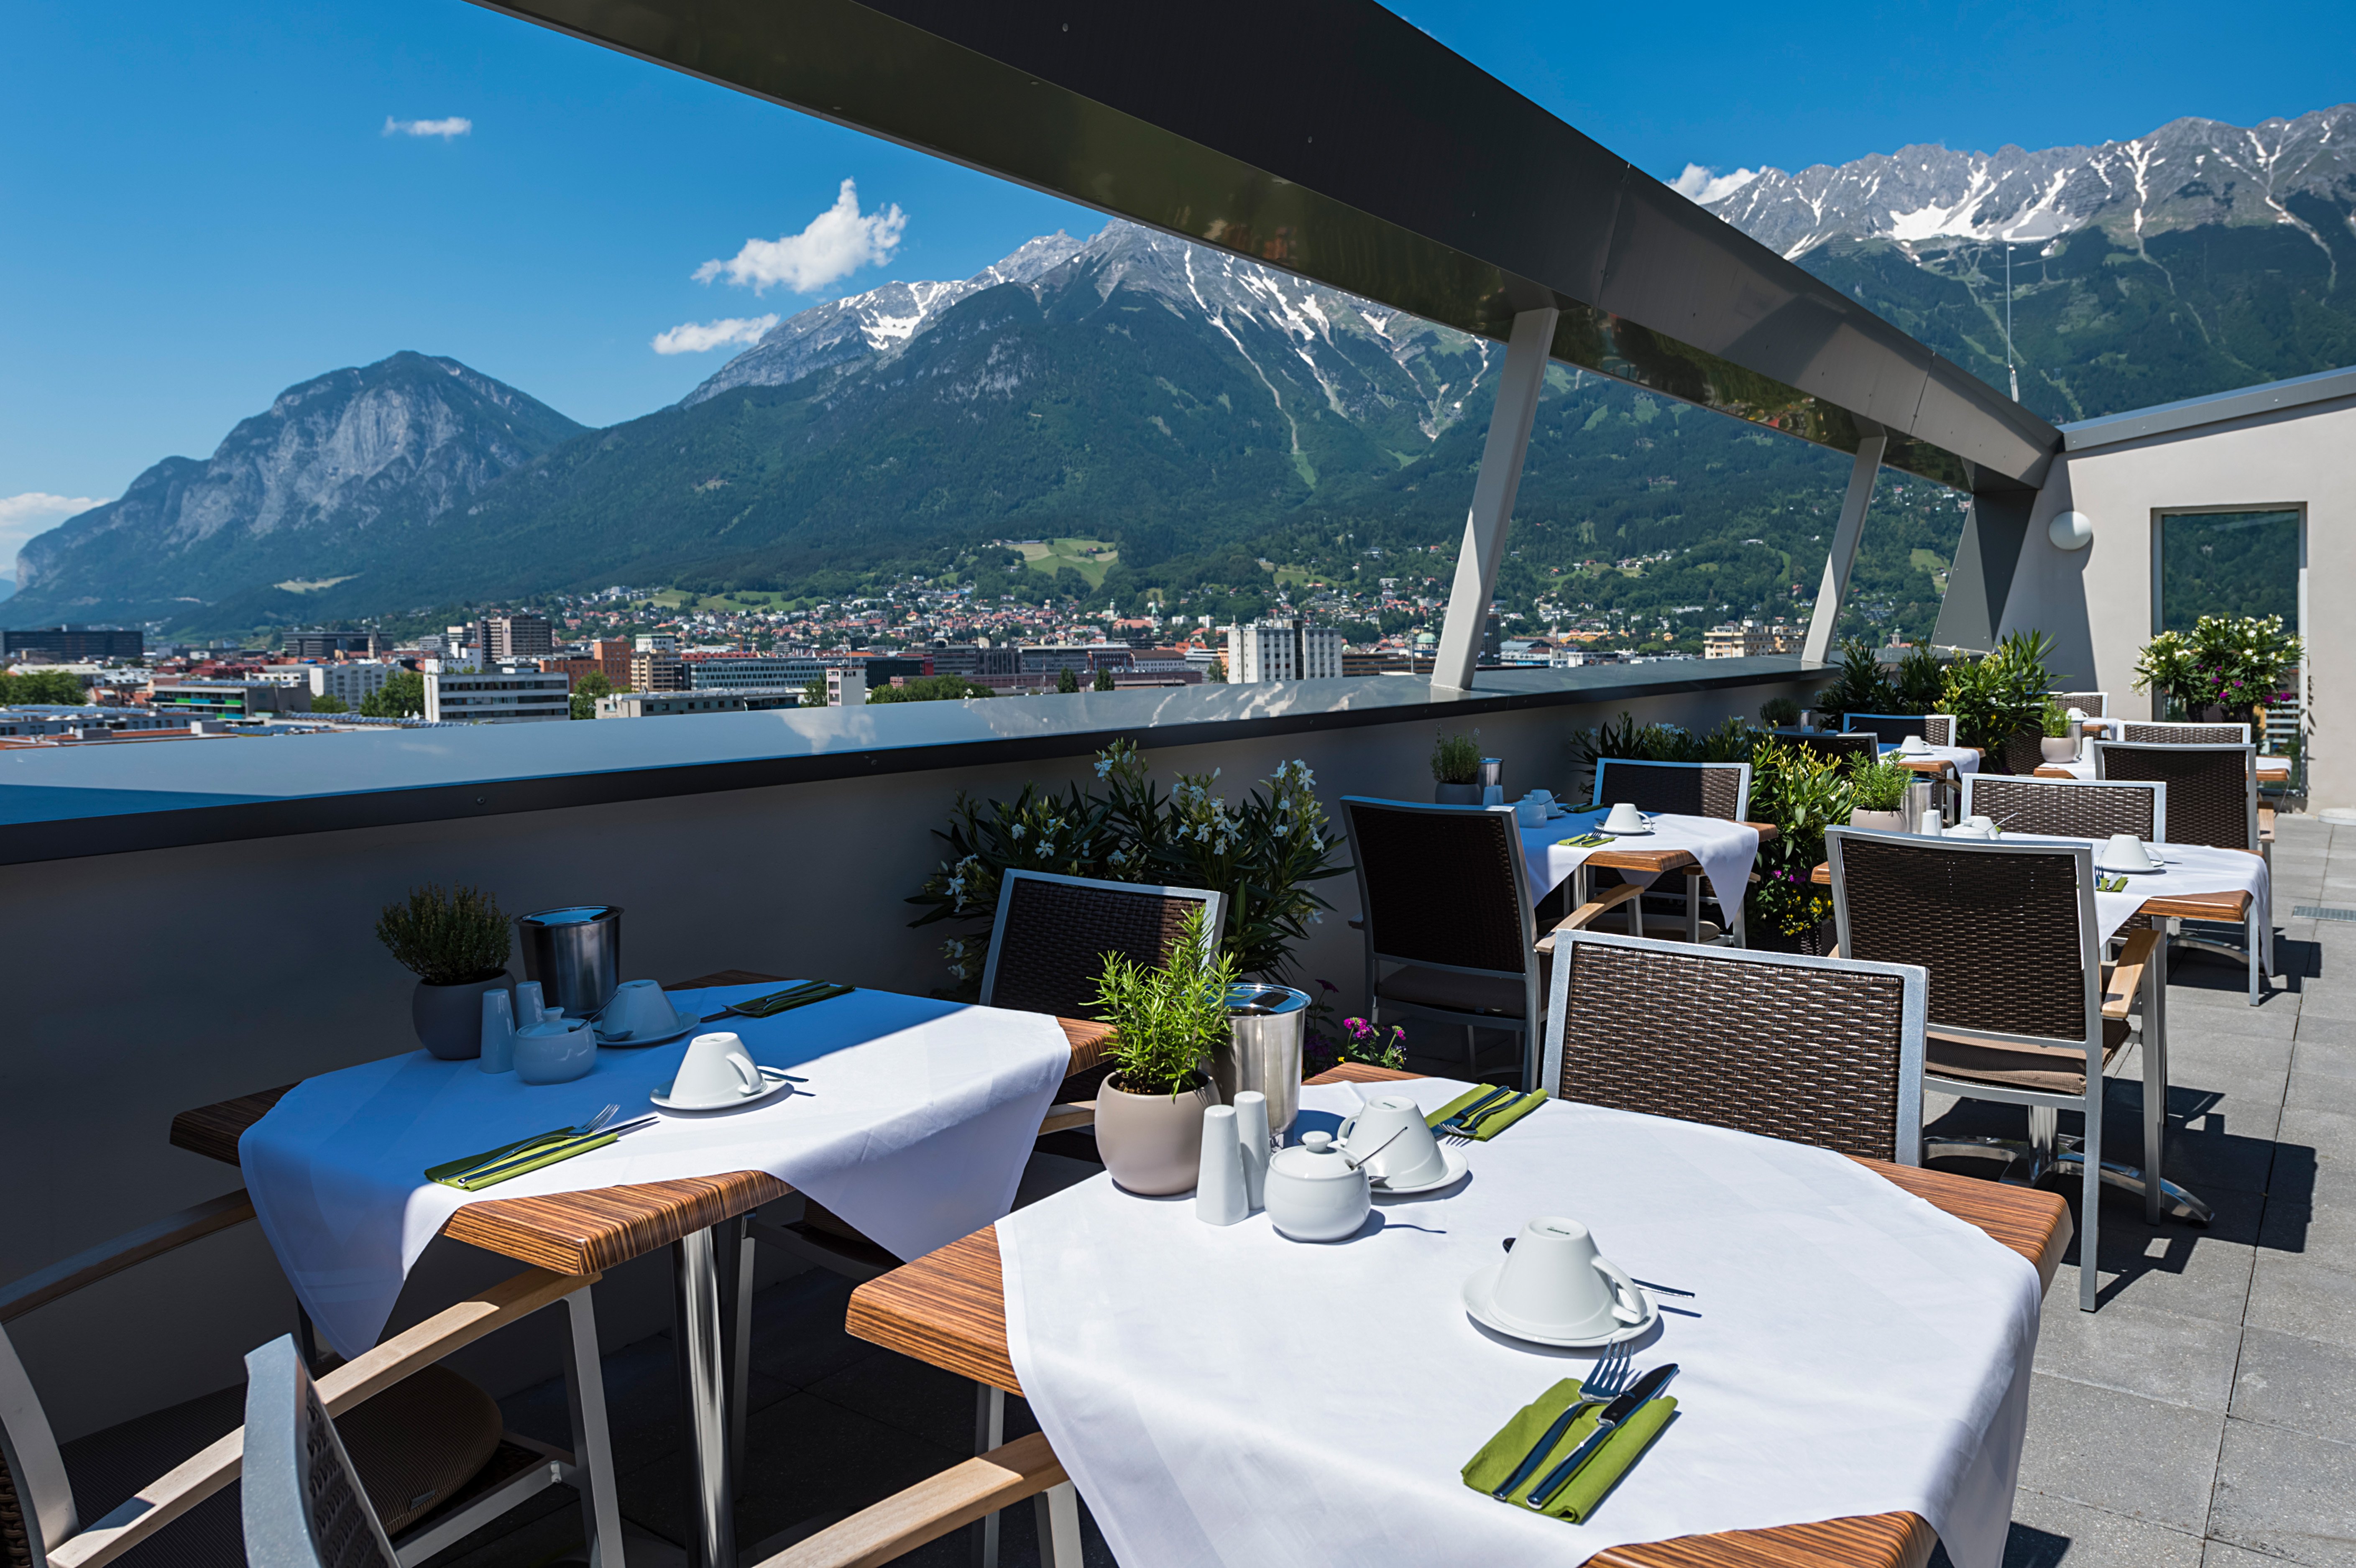 Tivoli_Innsbruck_11th_floor_breakfast_restaurant